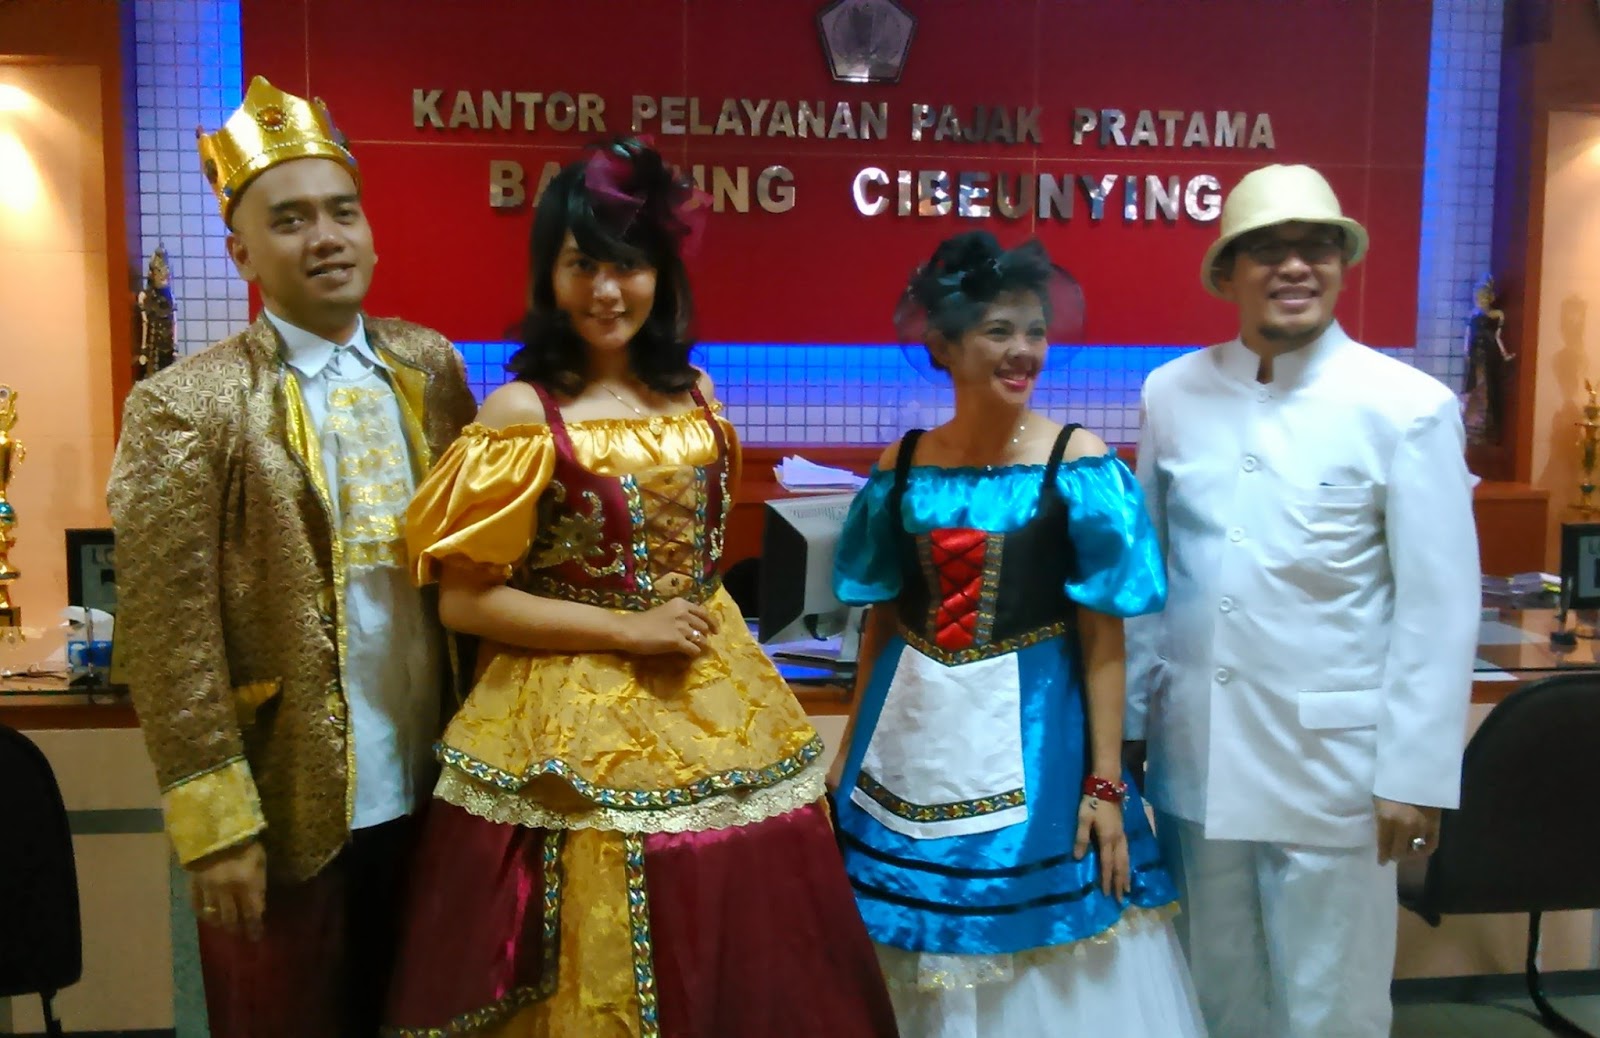 Cara KPP Pratama Bandung Cibeunying Peringati hari 